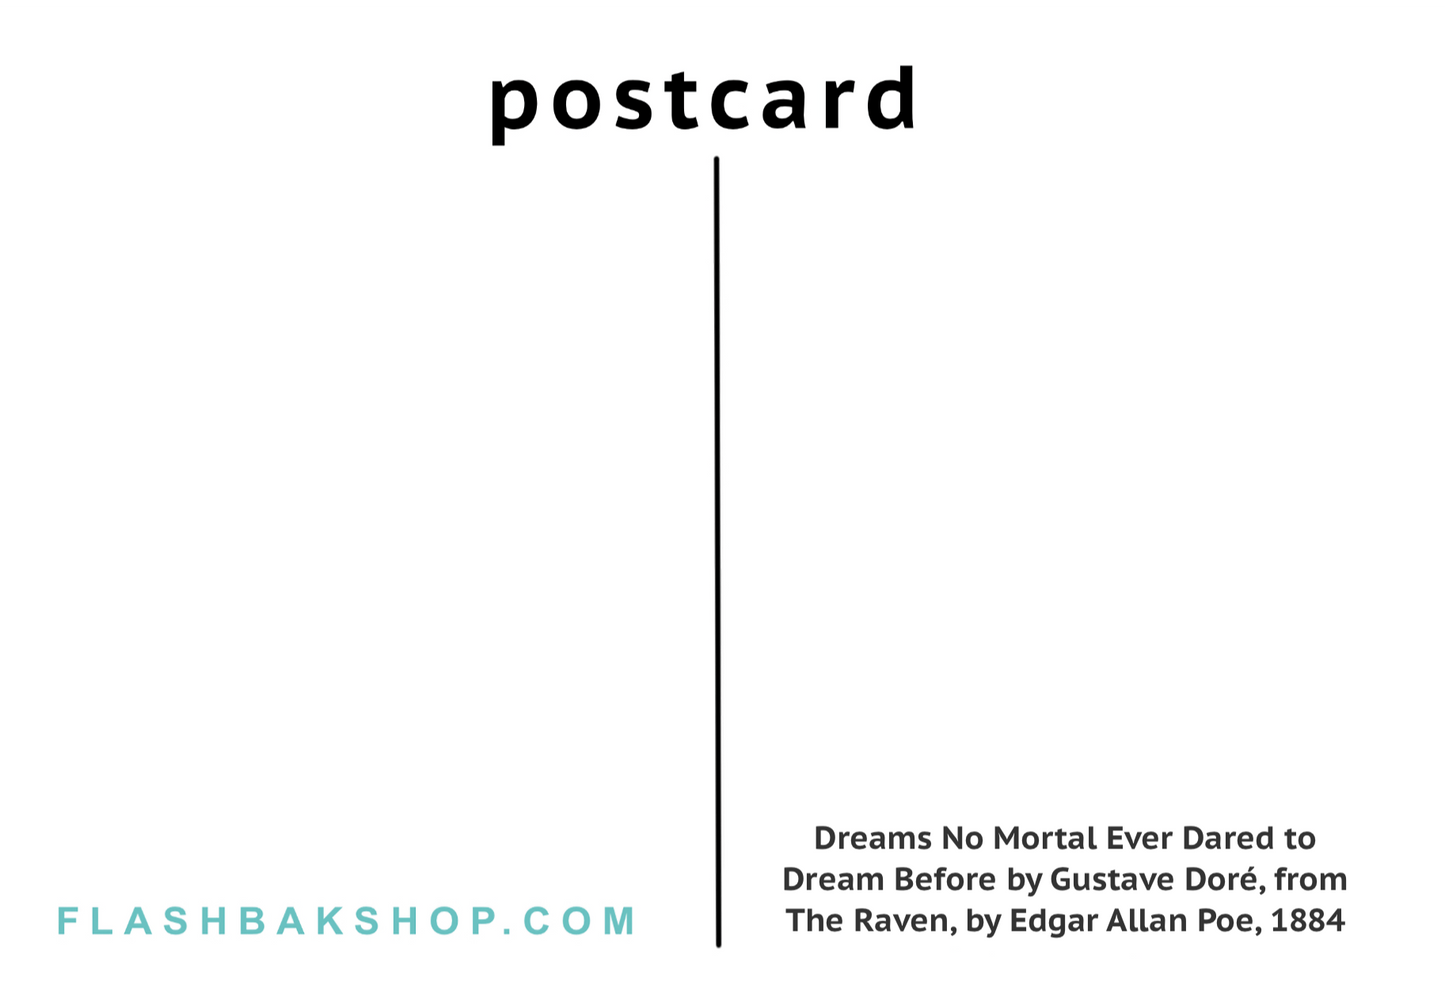 Rêves qu'aucun mortel n'a jamais osé rêver auparavant par Gustave Dor‚ 1884 - Carte postale